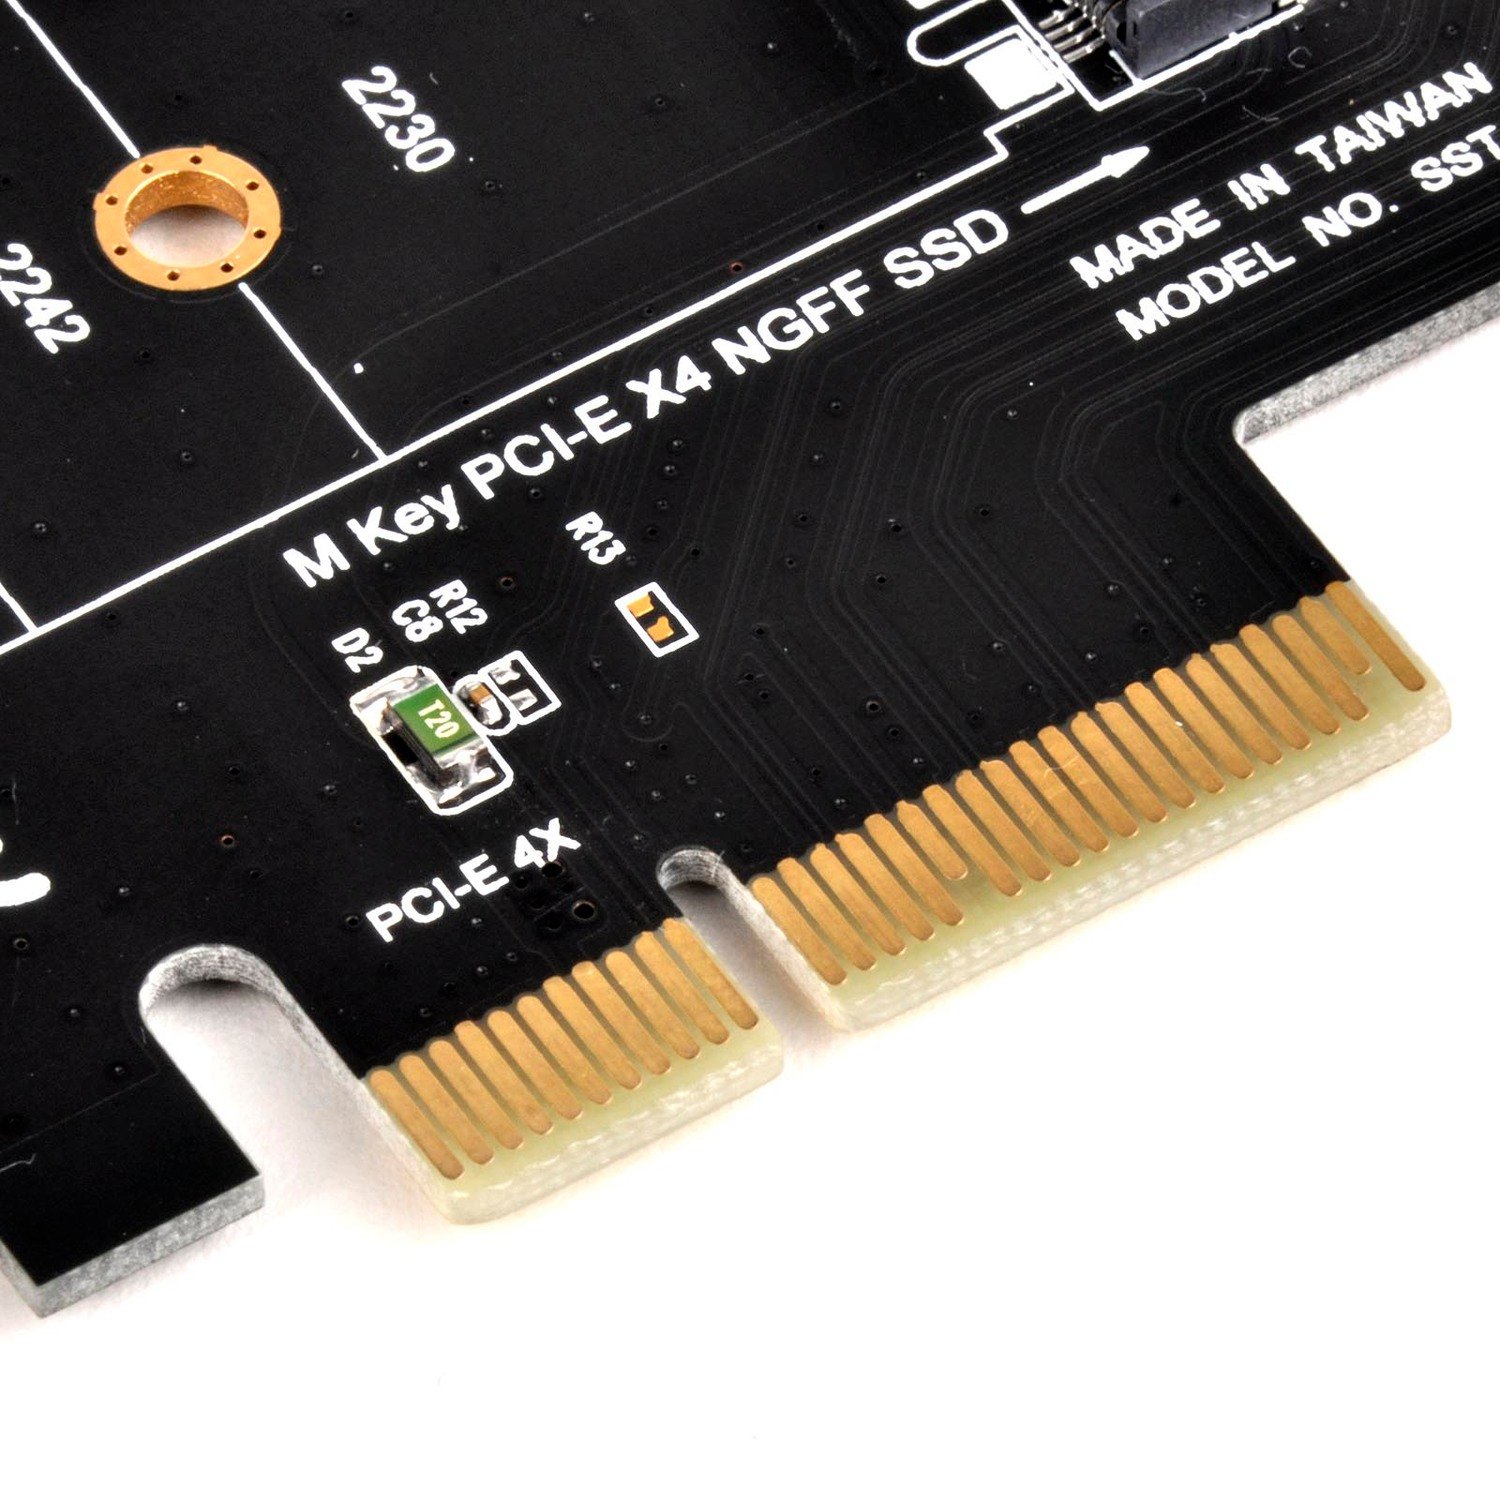 Плата-адаптер SilverStone PCIe x4 для SSD m.2 NVMe фото 